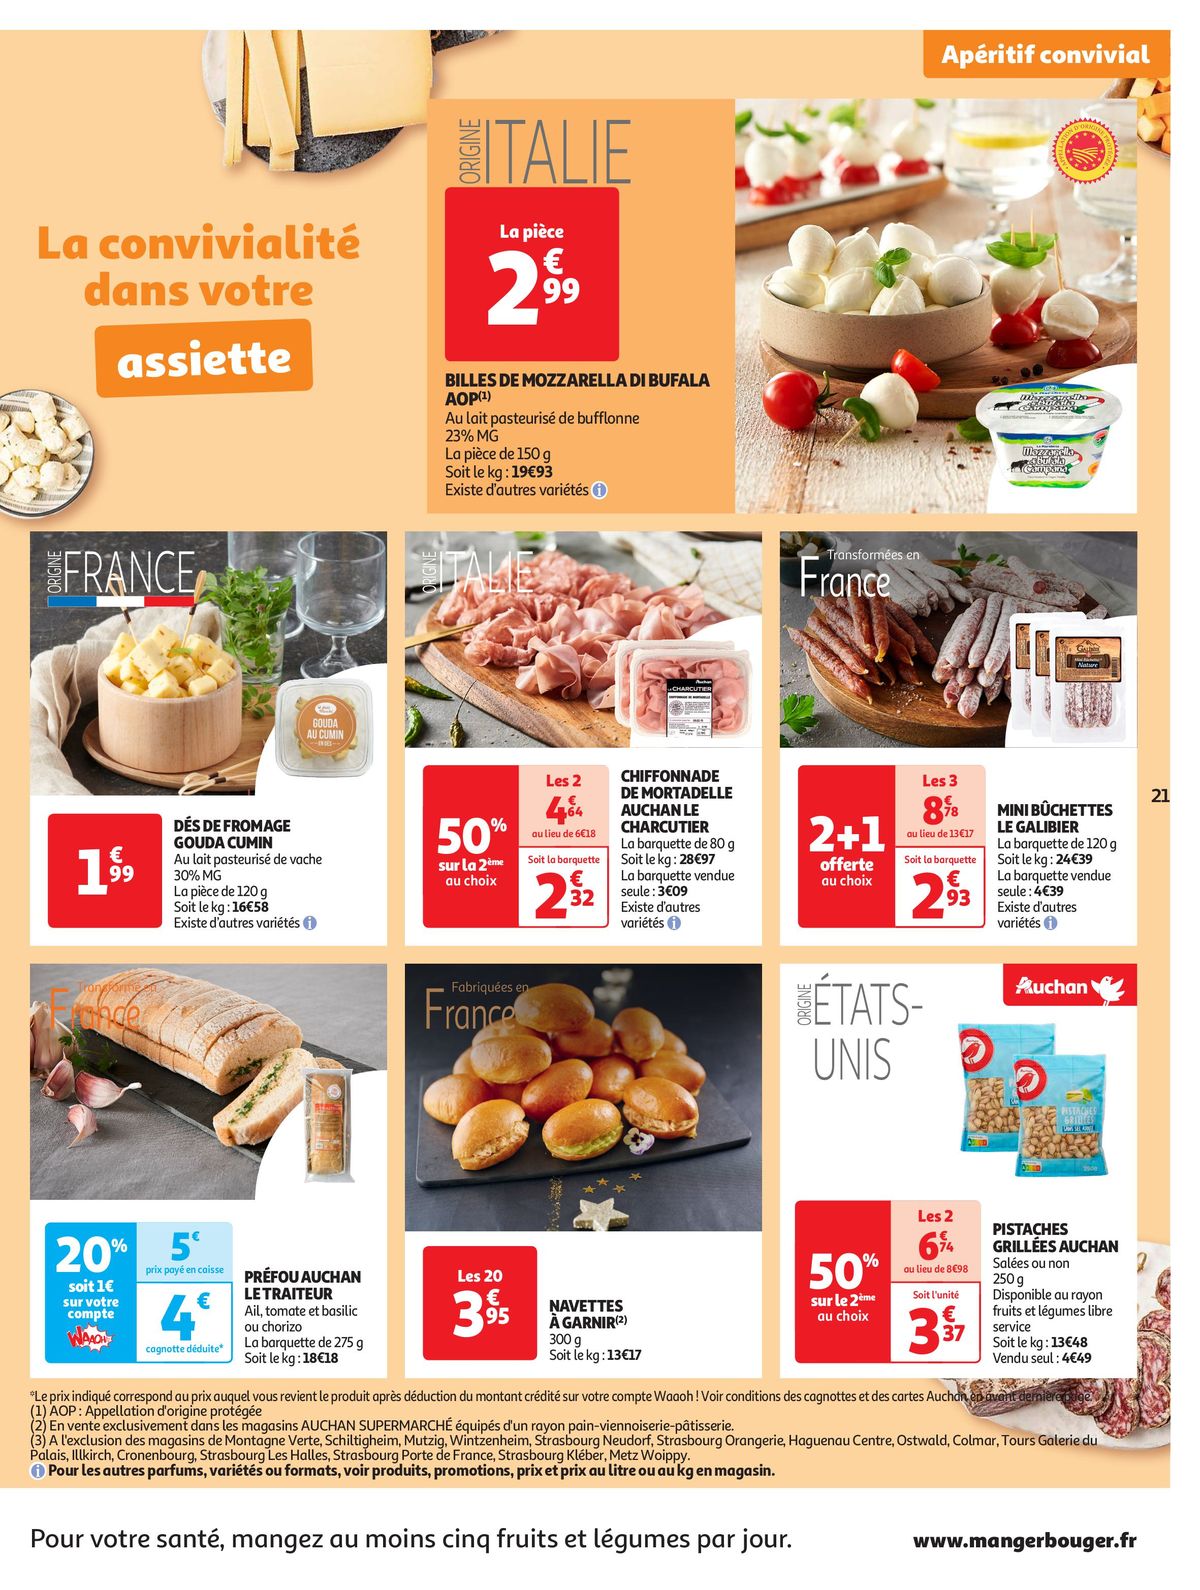 Catalogue Format XXL à prix XXS dans votre supermarché, page 00021